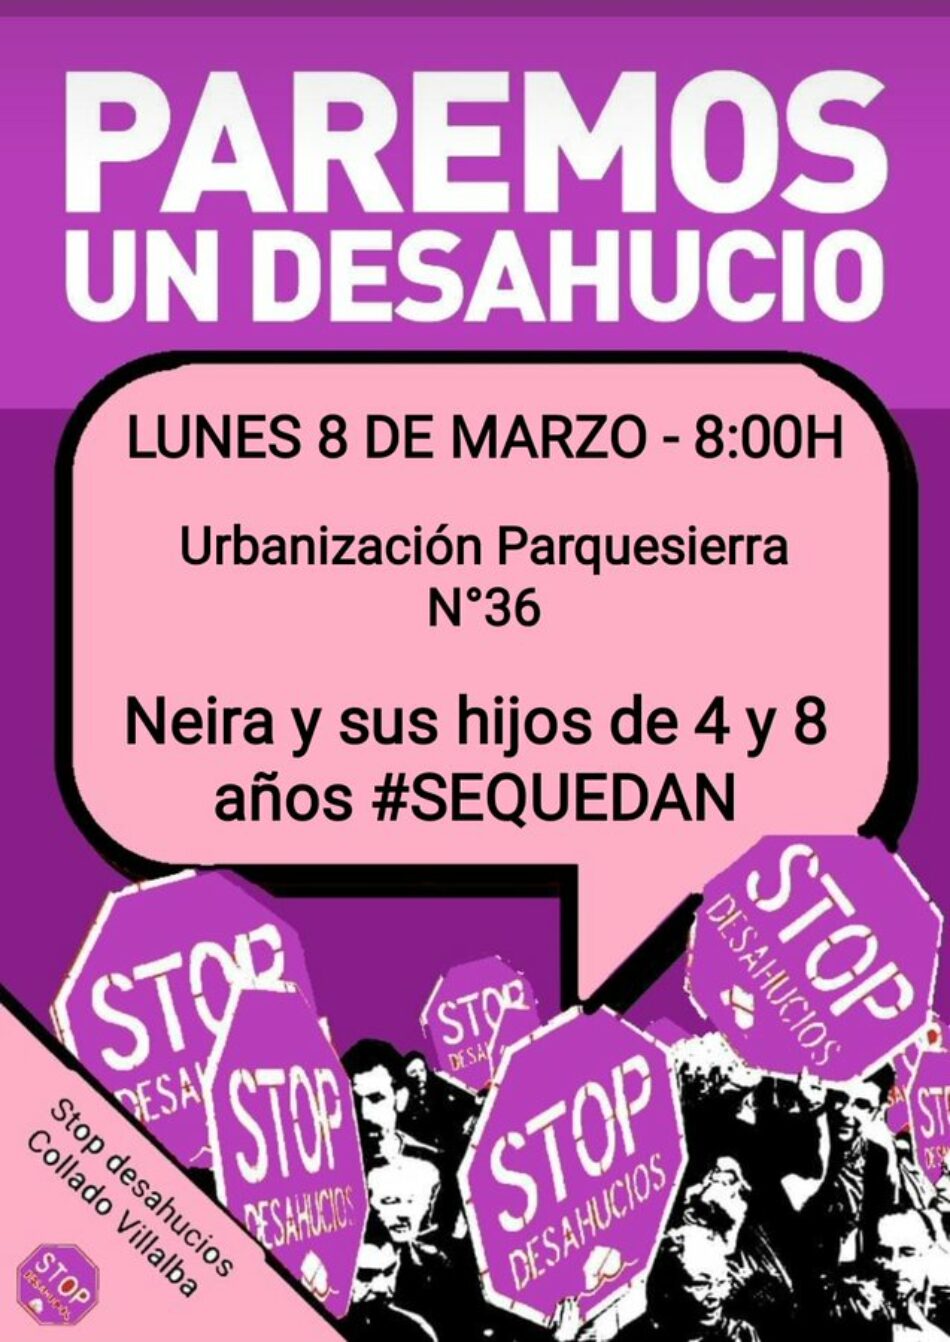 El 8 de marzo Madrid se tiñe de morado y en Collado y Villalba se pretende desahuciar a una mujer con dos menores de 4 y 8 años sin alternativa habitacional